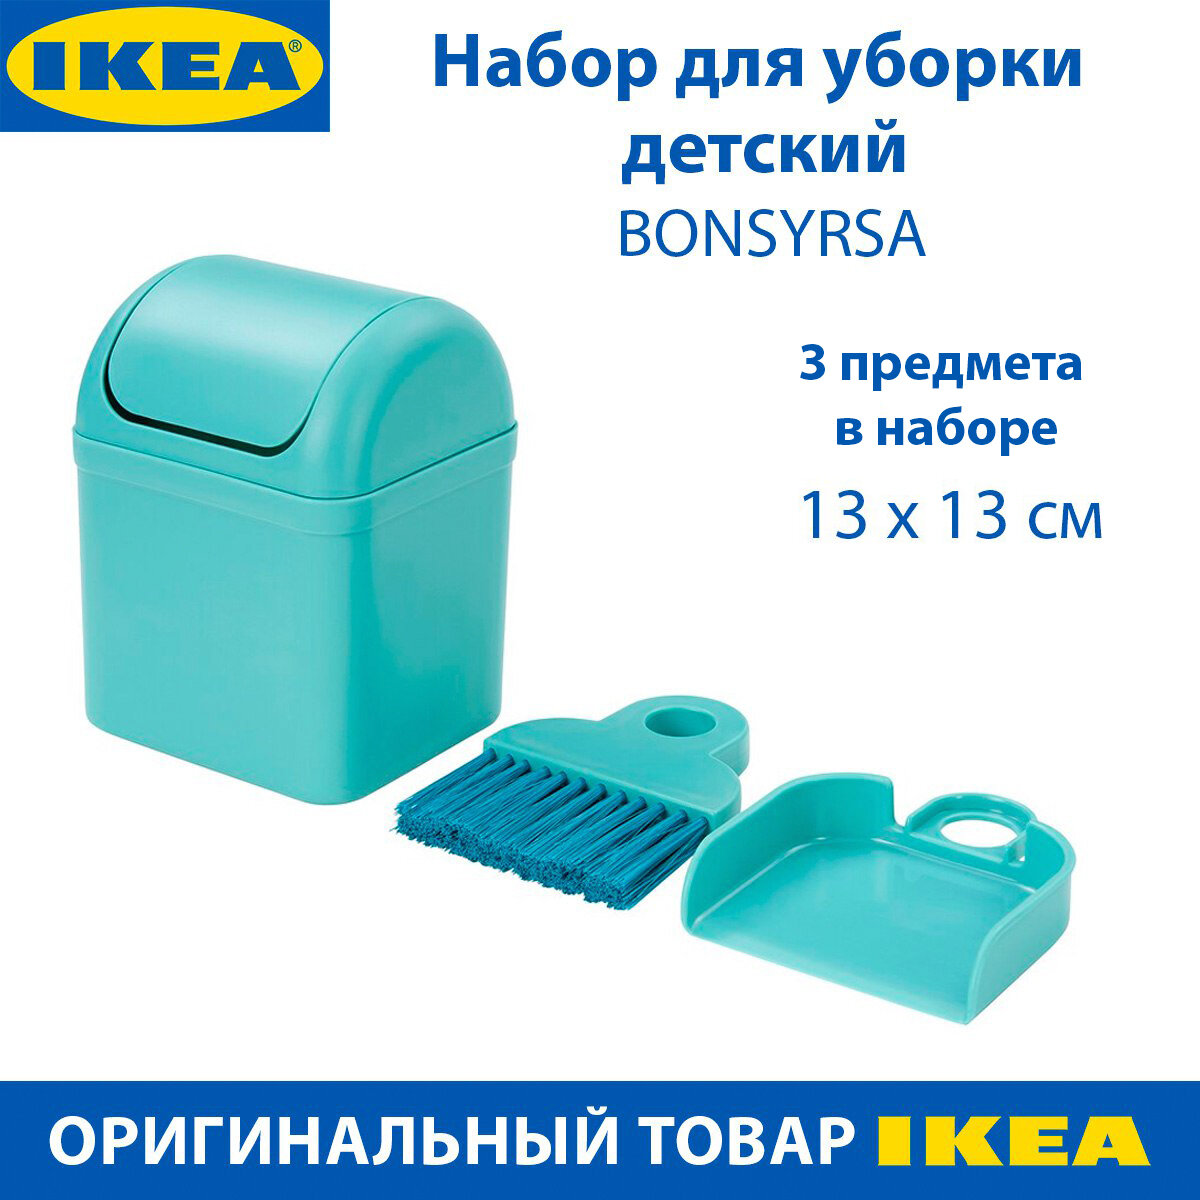 Набор для уборки детский IKEA - BONSYRSA (бонсирса), бирюзовый, с 3 лет, 3 предмета в упаковке